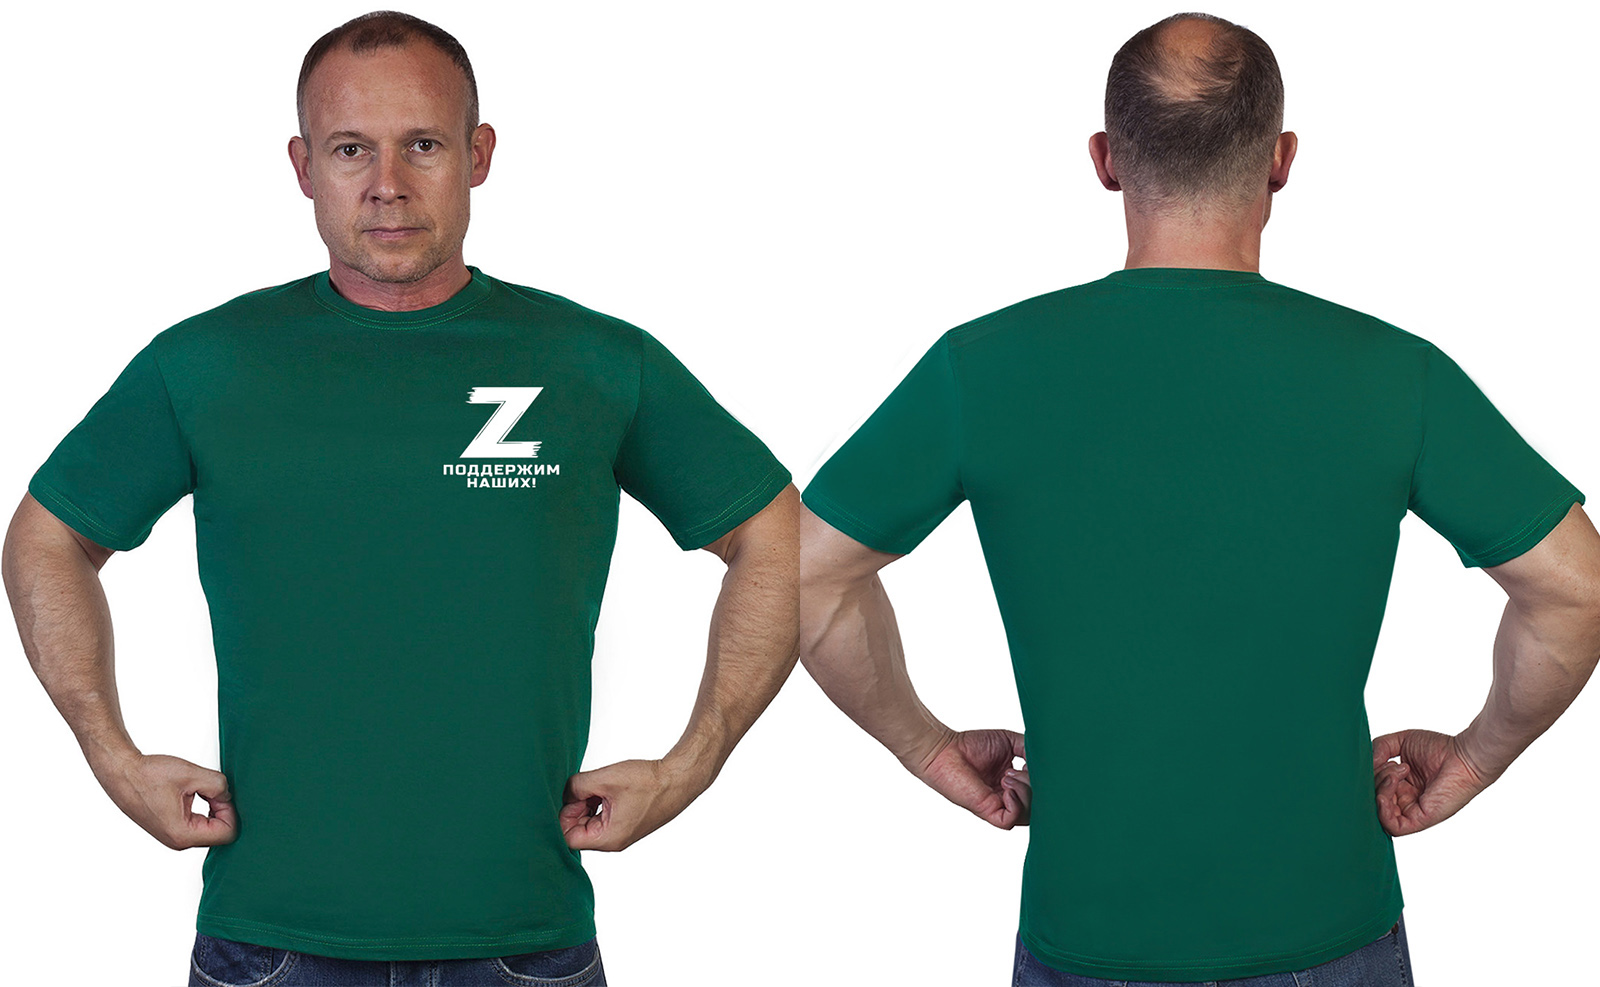 Зеленая футболка "Z" – поддержим наших!